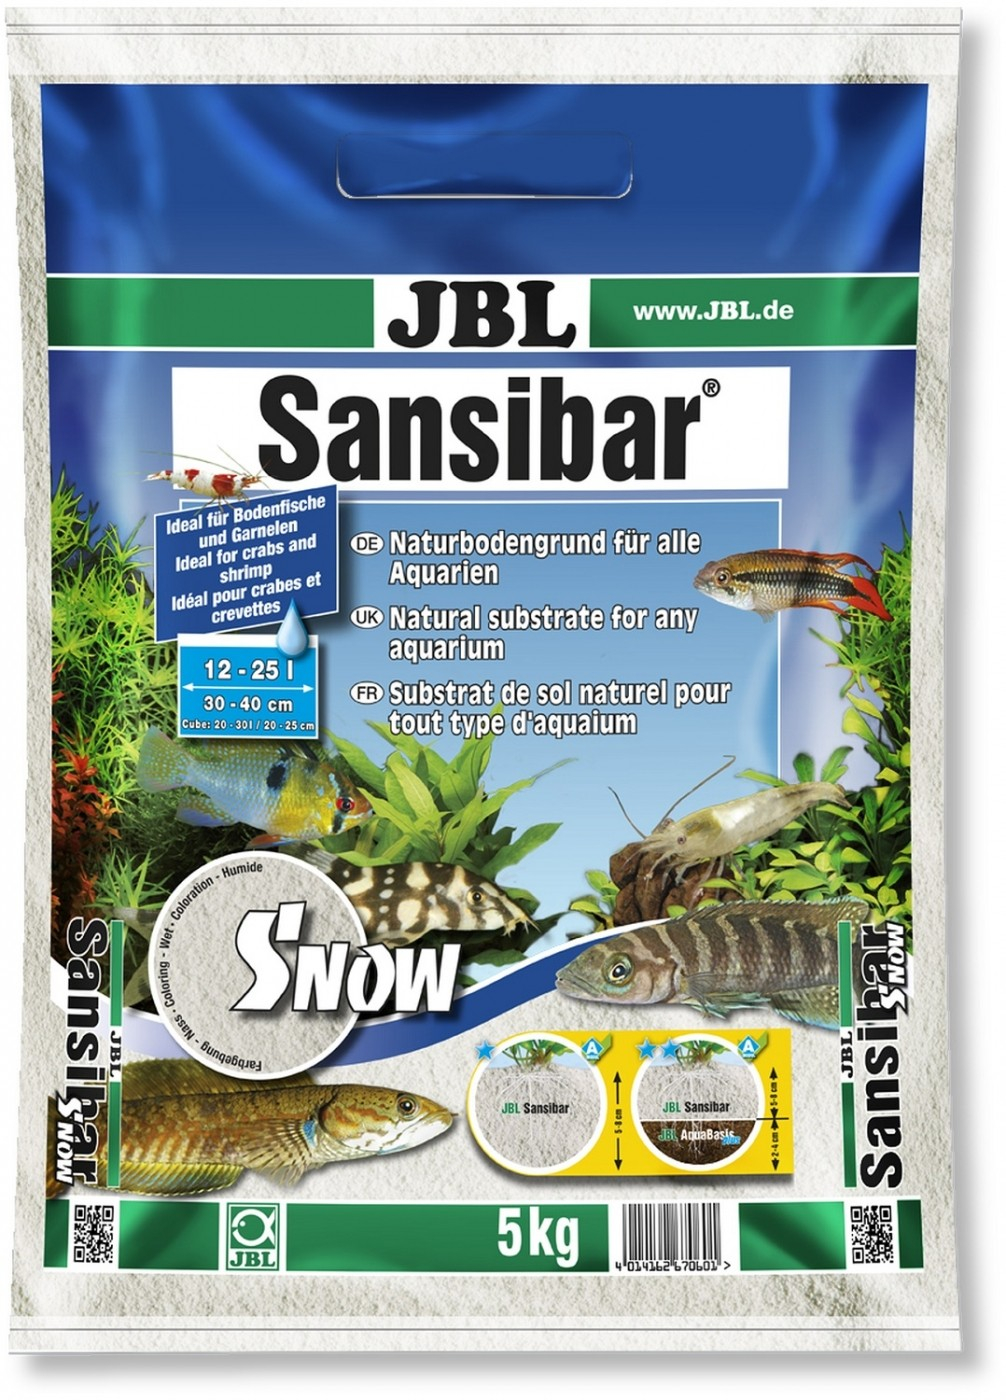 JBL Sansibar Snow bodemgrond